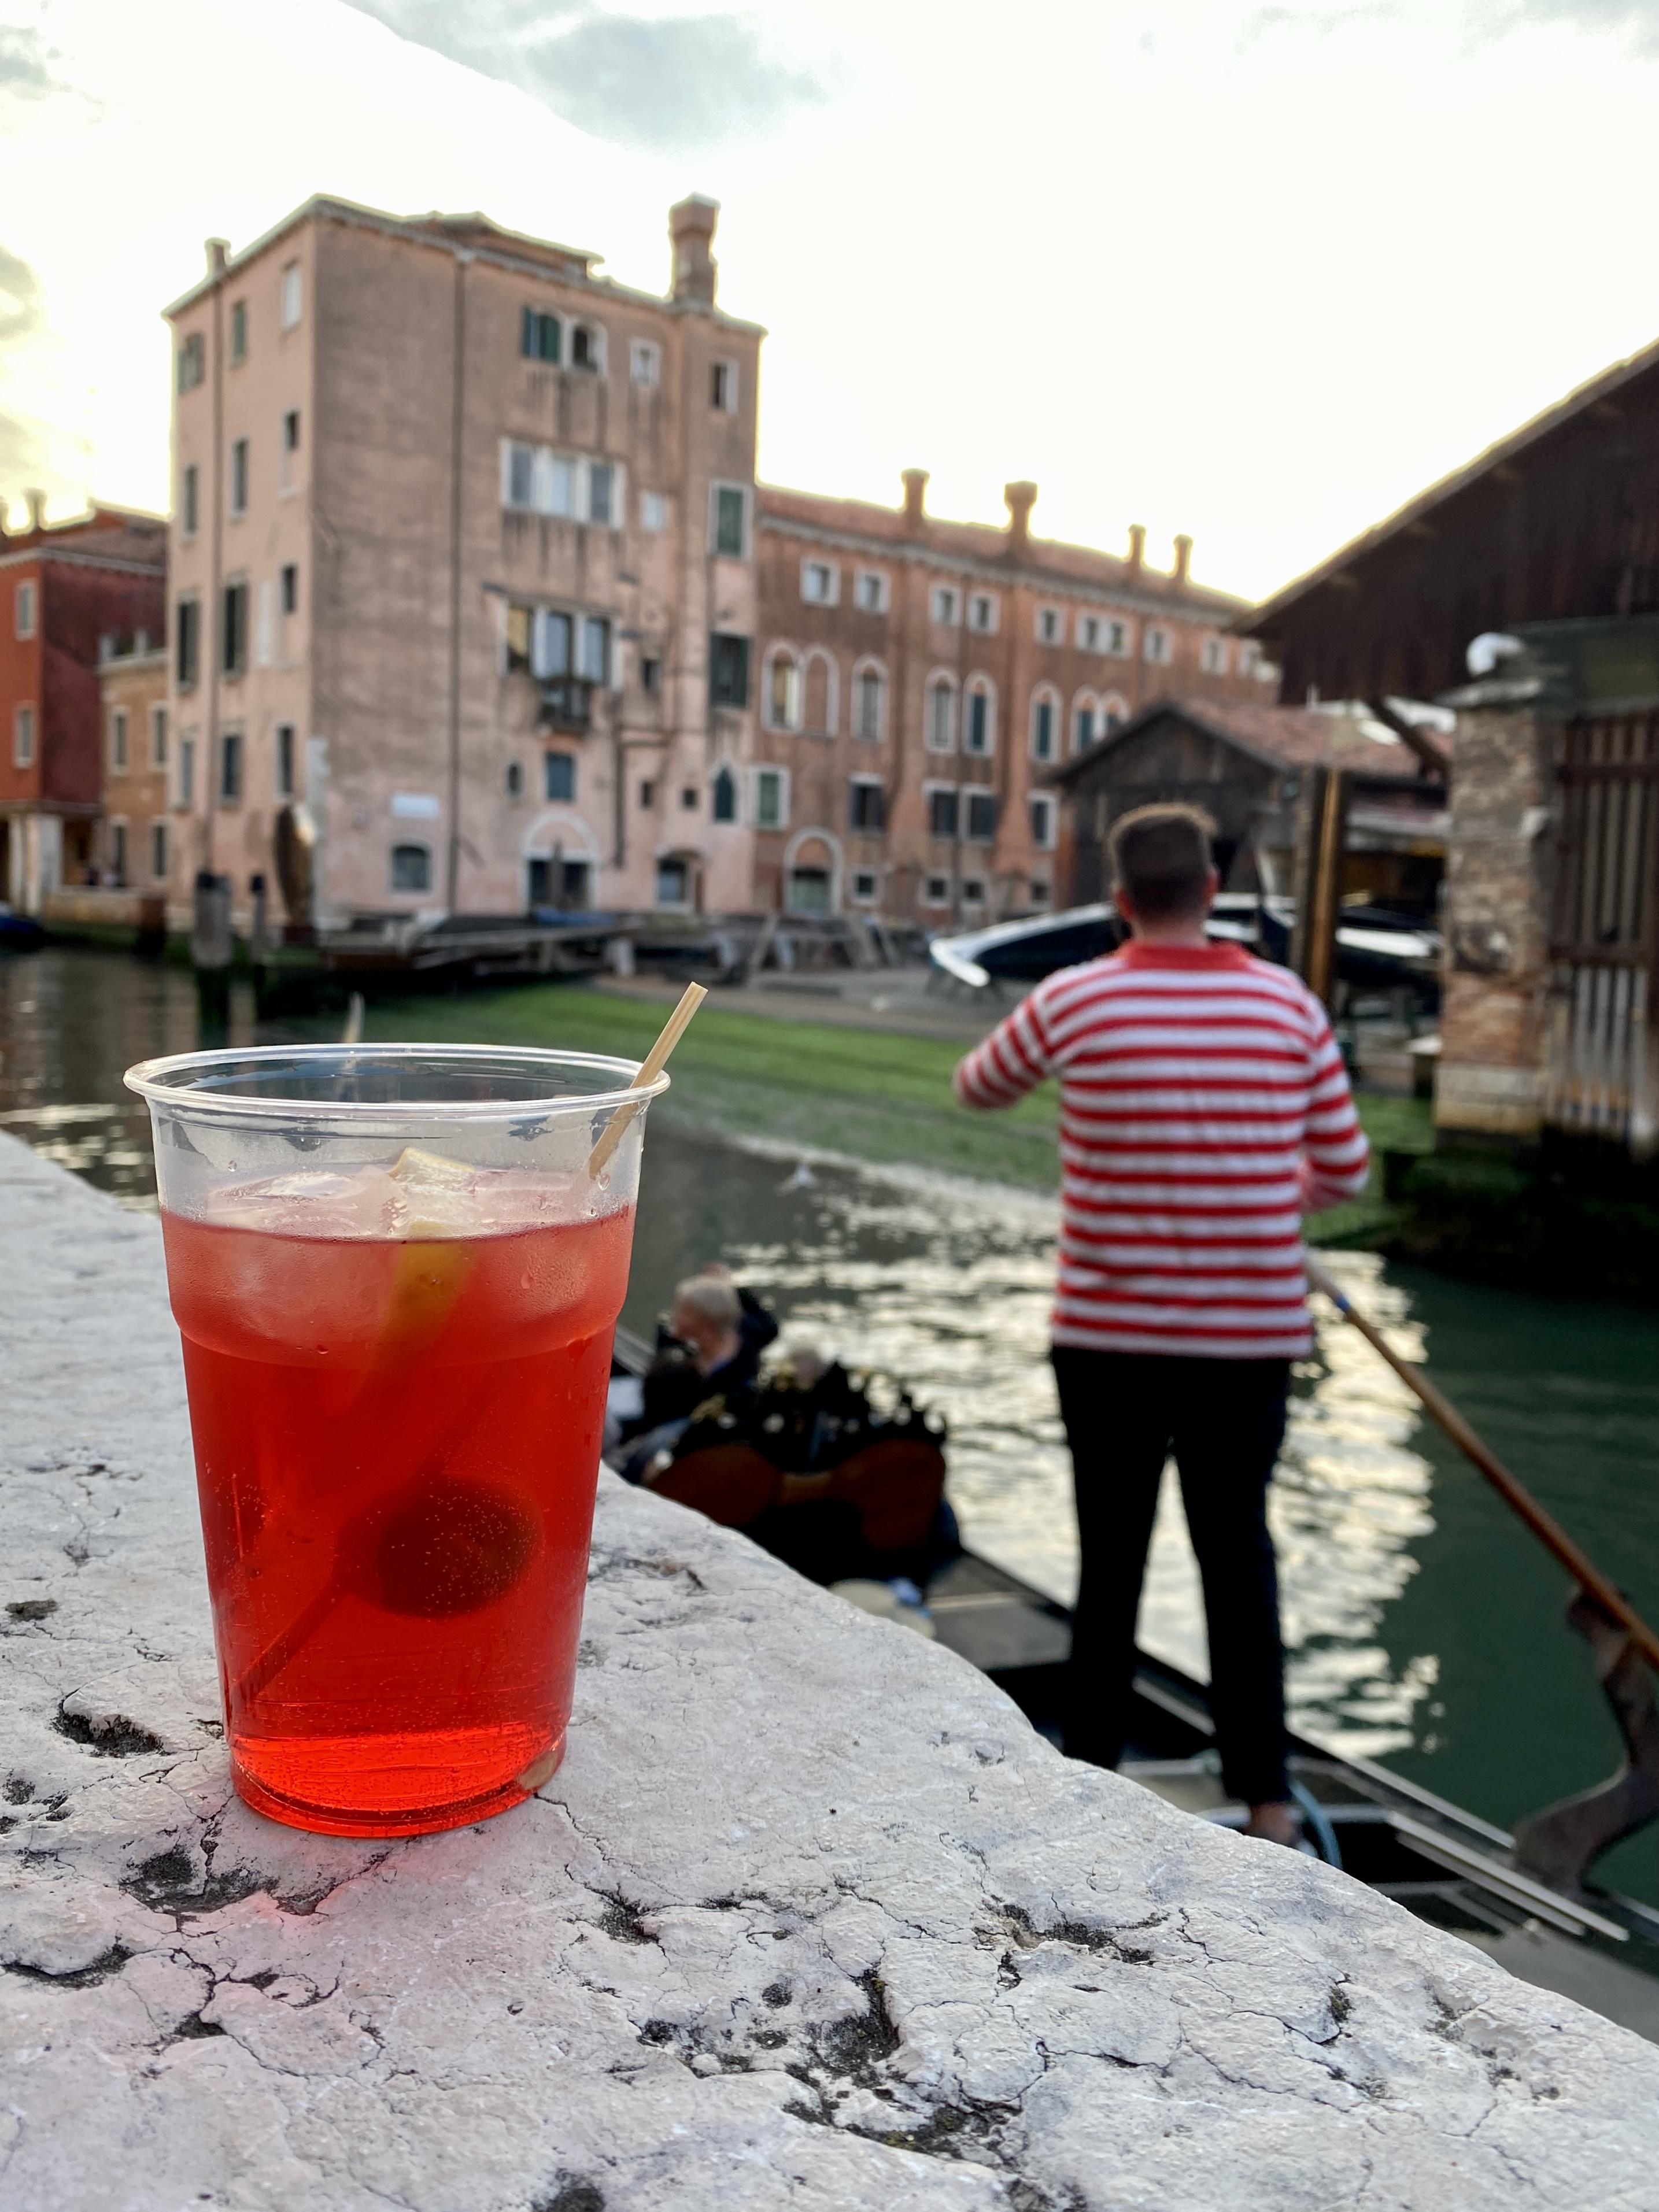 Italien, Venedig: Aperol Spritz auf der Mauer vor der Osteria Al Squero, im Hintergrund Gondoliere mit rot-weiß-geringeltem Shirt